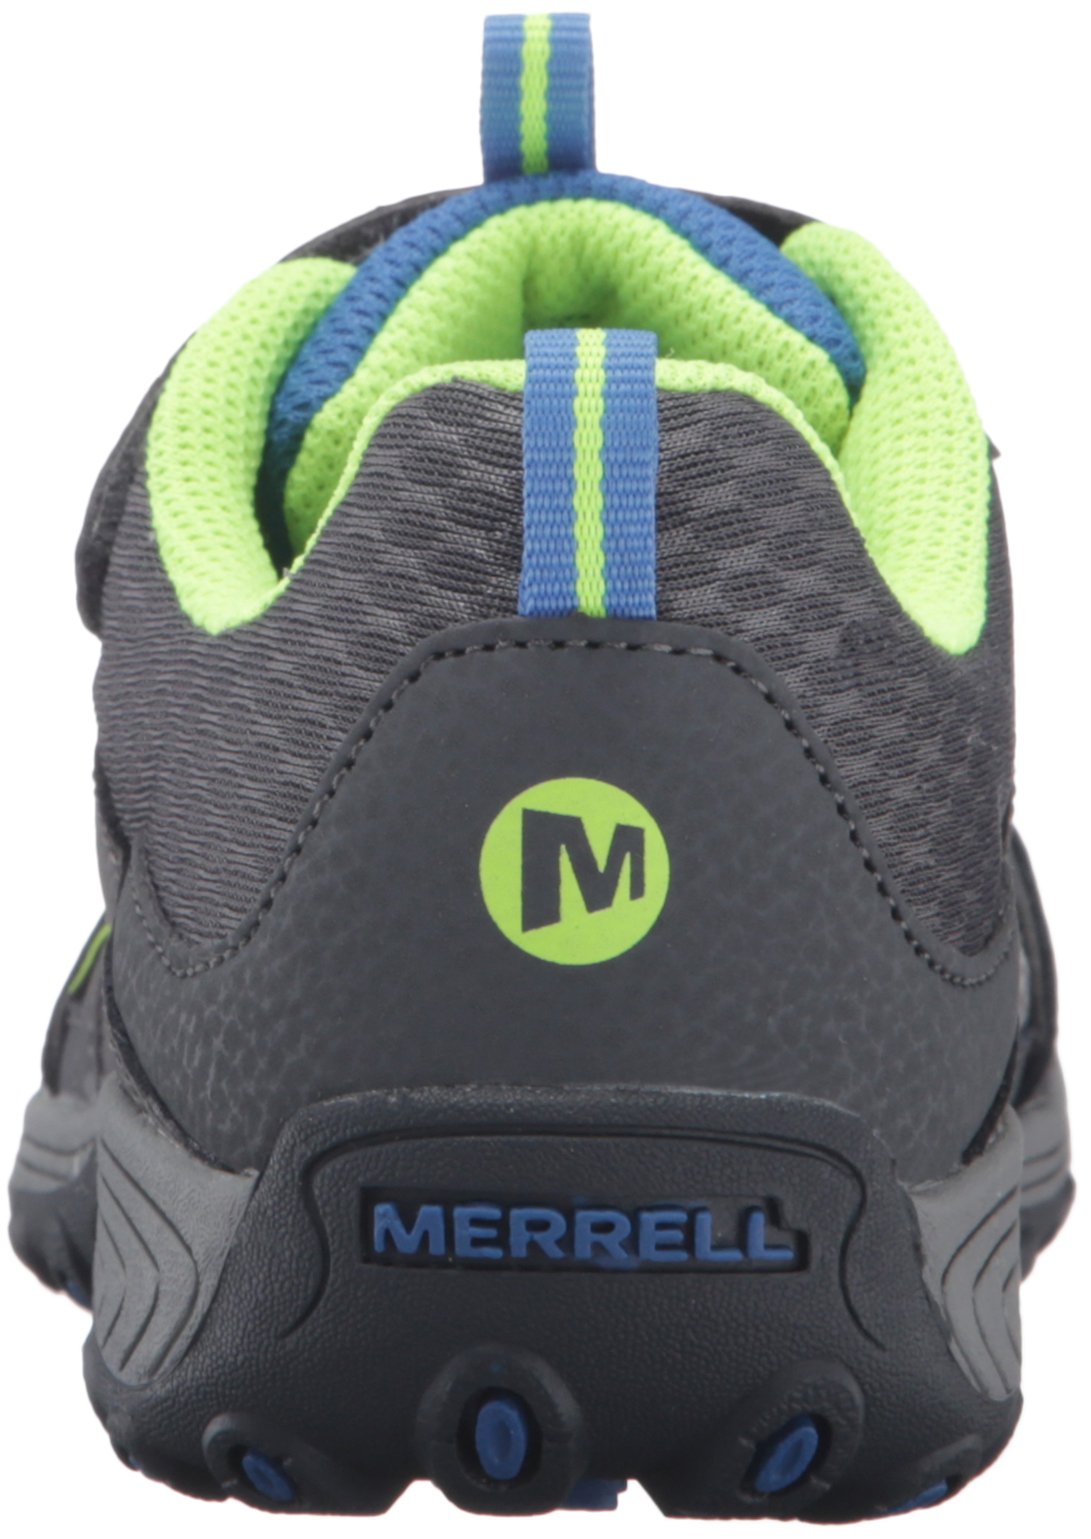 Merrell Unisex-Child Hiking Shoes